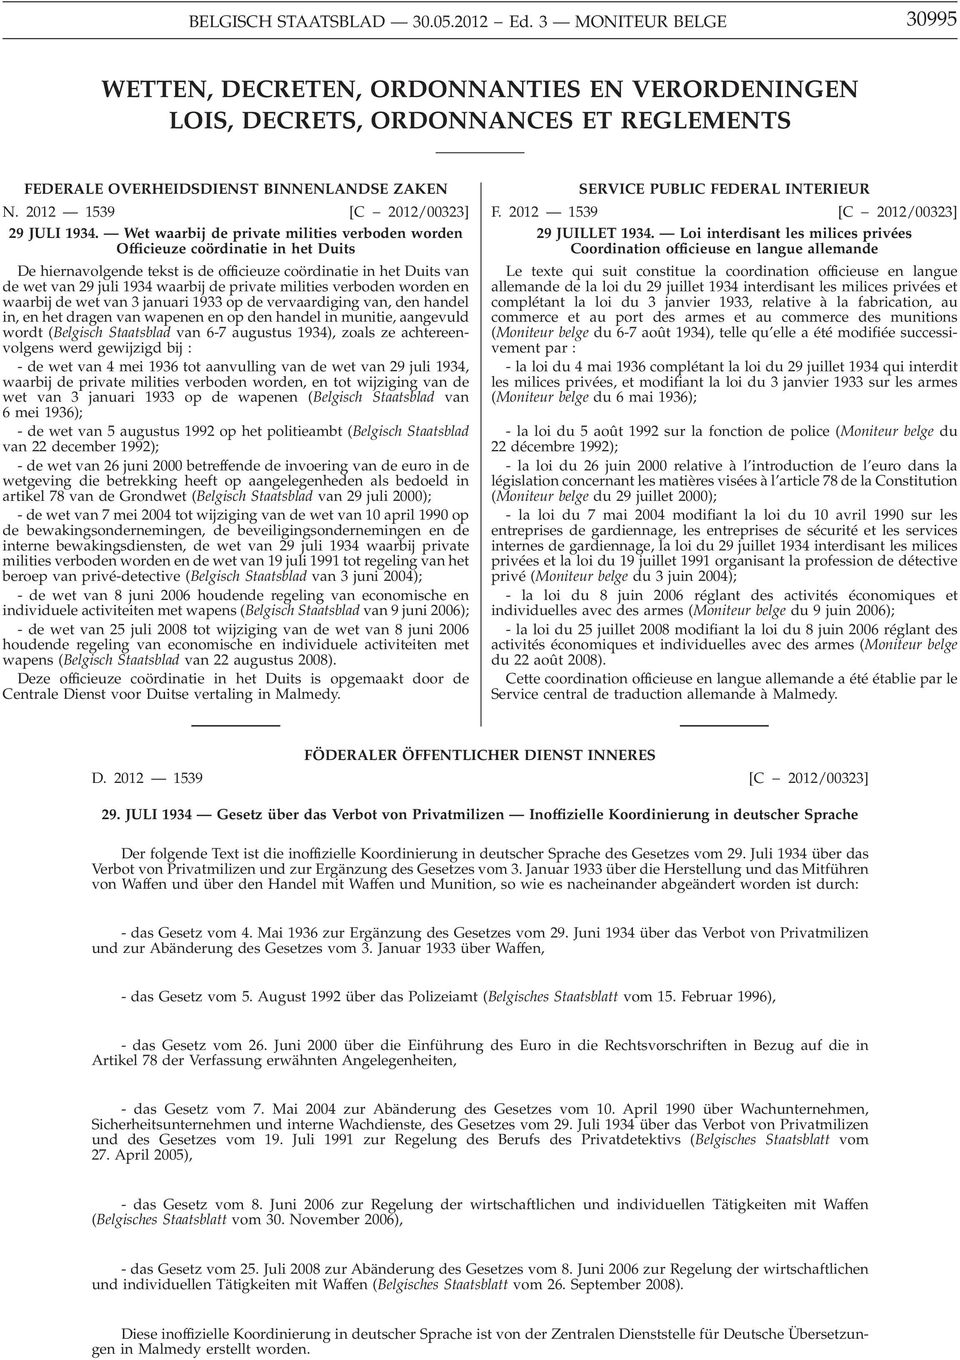 Wet waarbij de private milities verboden worden Officieuze coördinatie in het Duits De hiernavolgende tekst is de officieuze coördinatie in het Duits van de wet van 29 juli 1934 waarbij de private